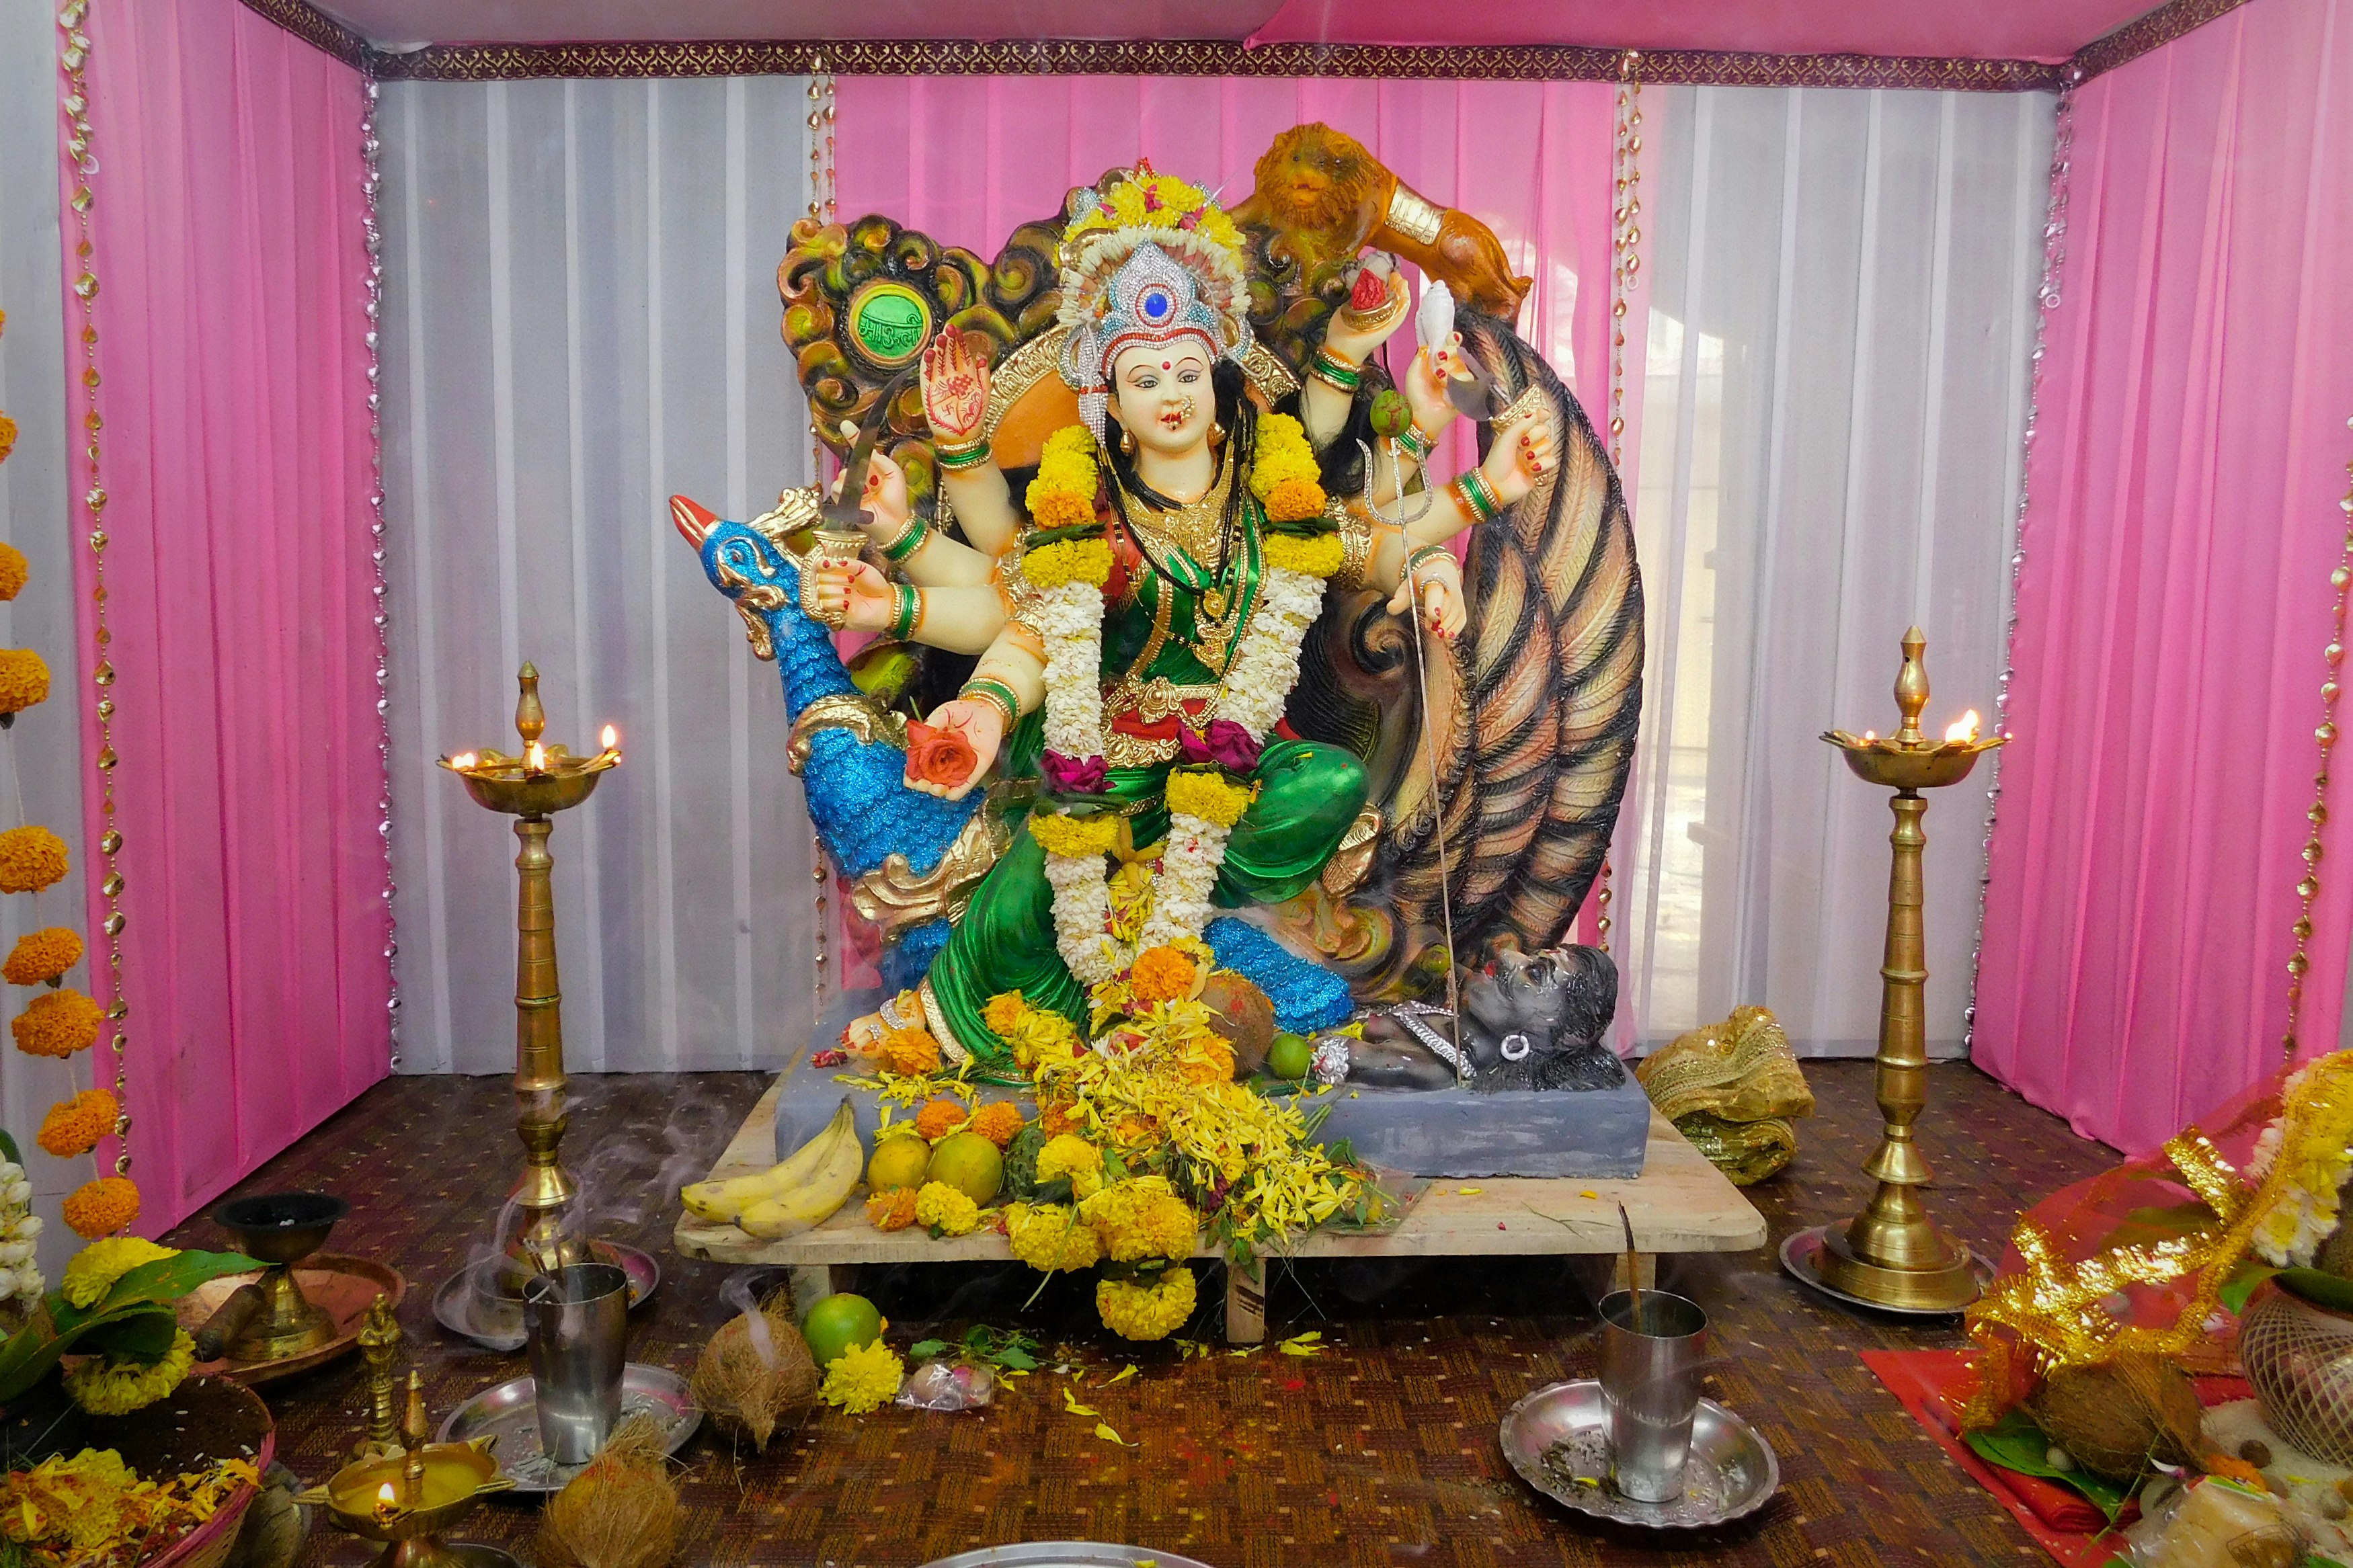 hindu deity figurine on table